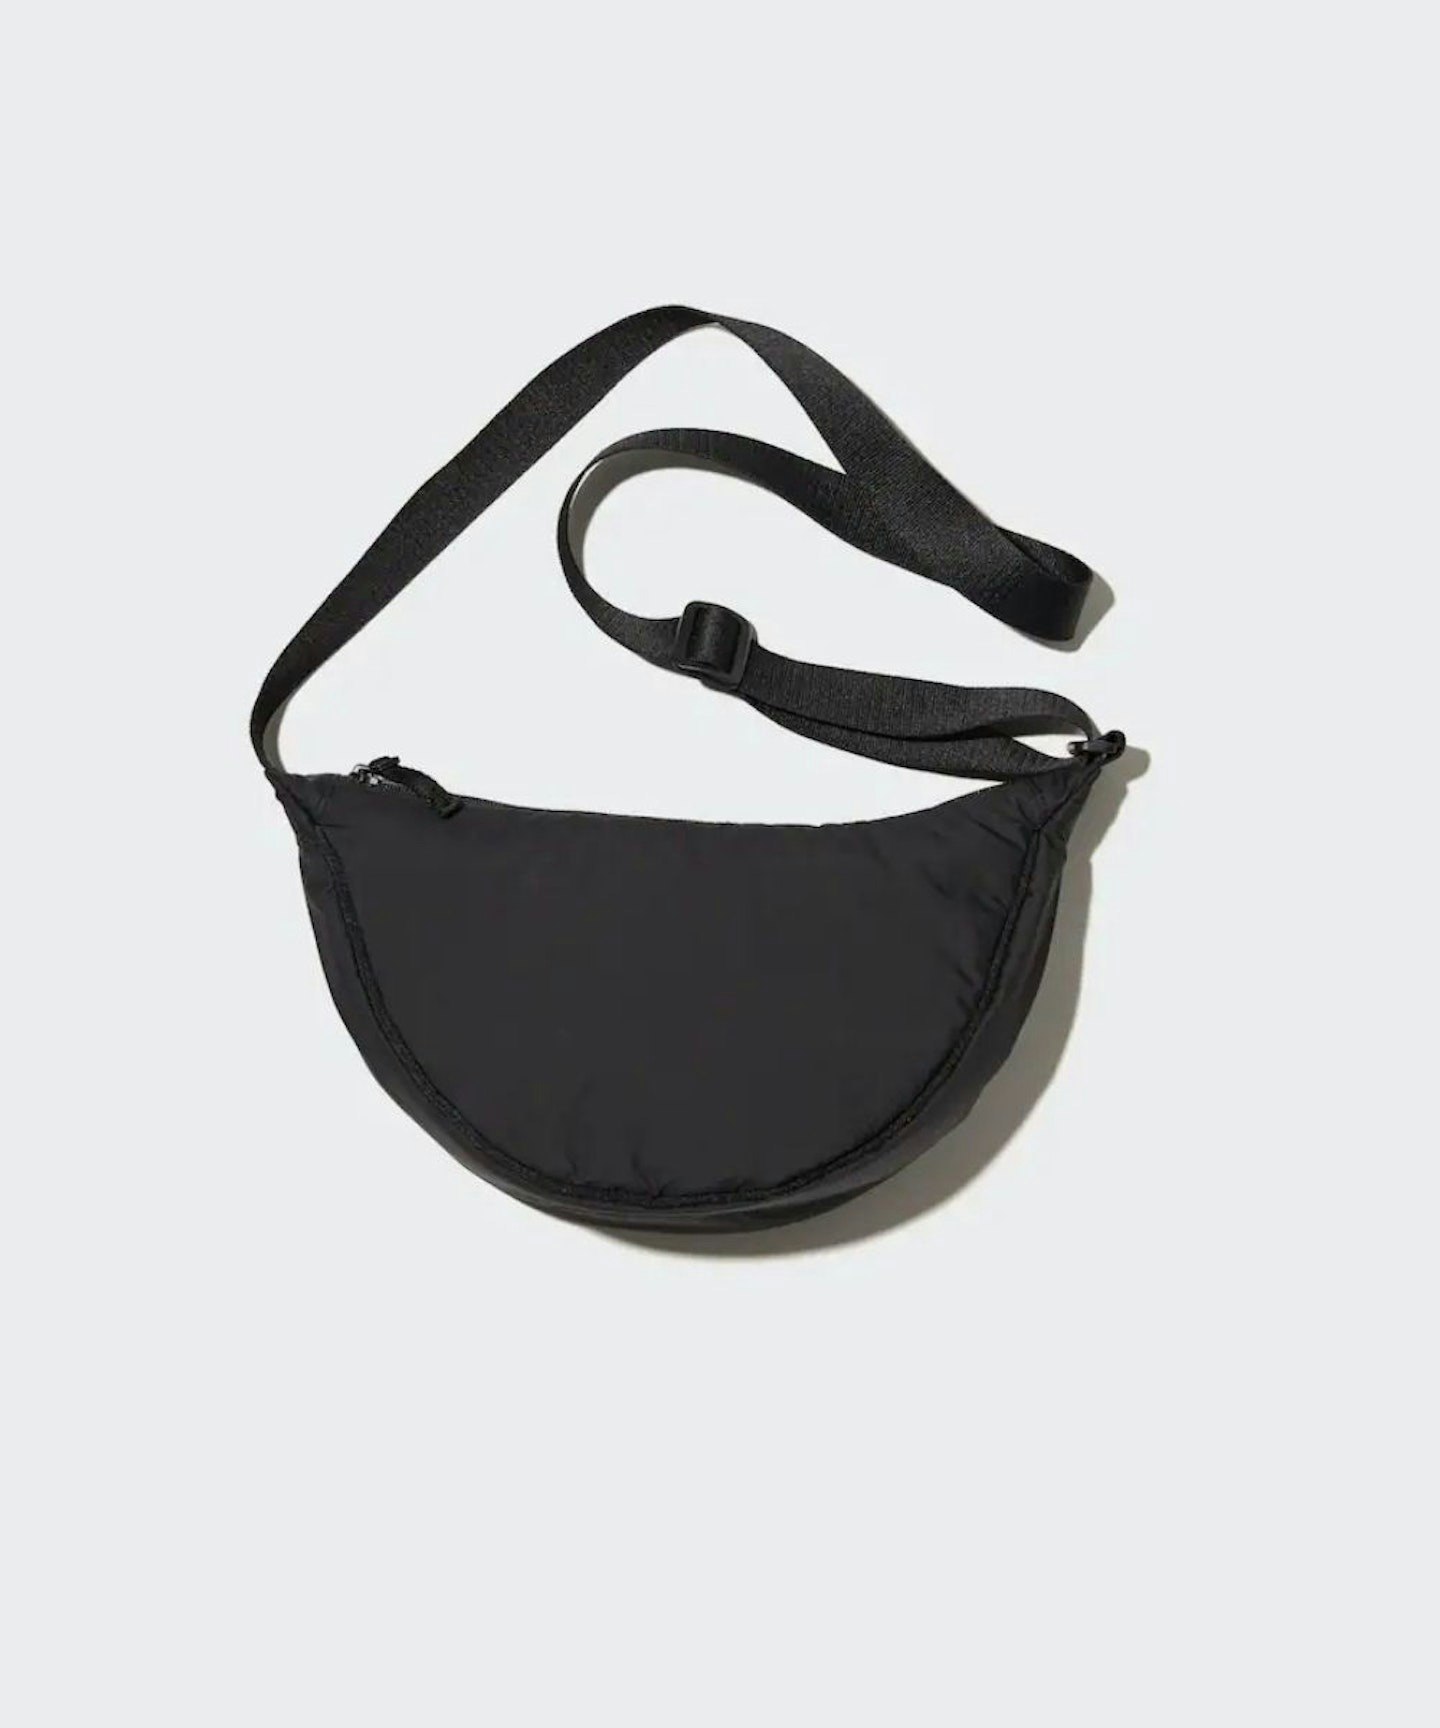 Uniqlo Round Mini Shoulder Bag in Black